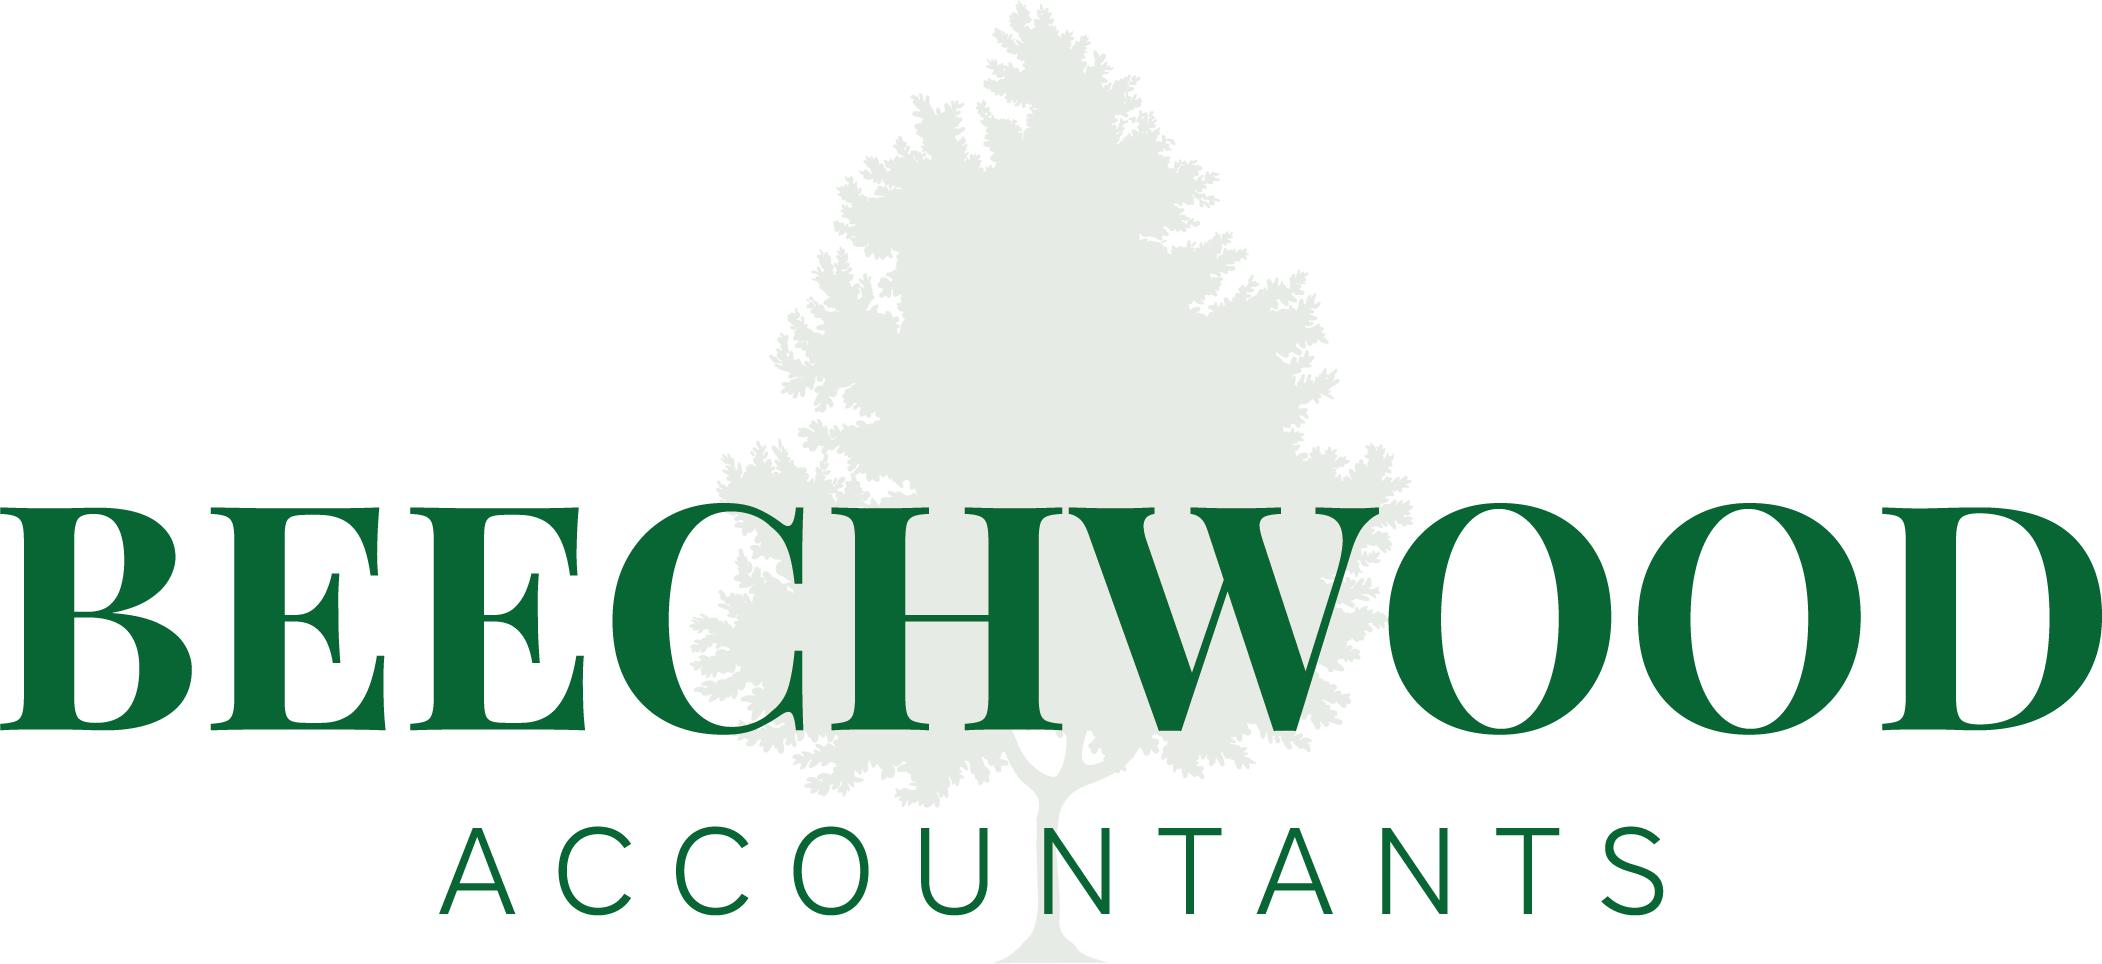 Beechwood Accountants